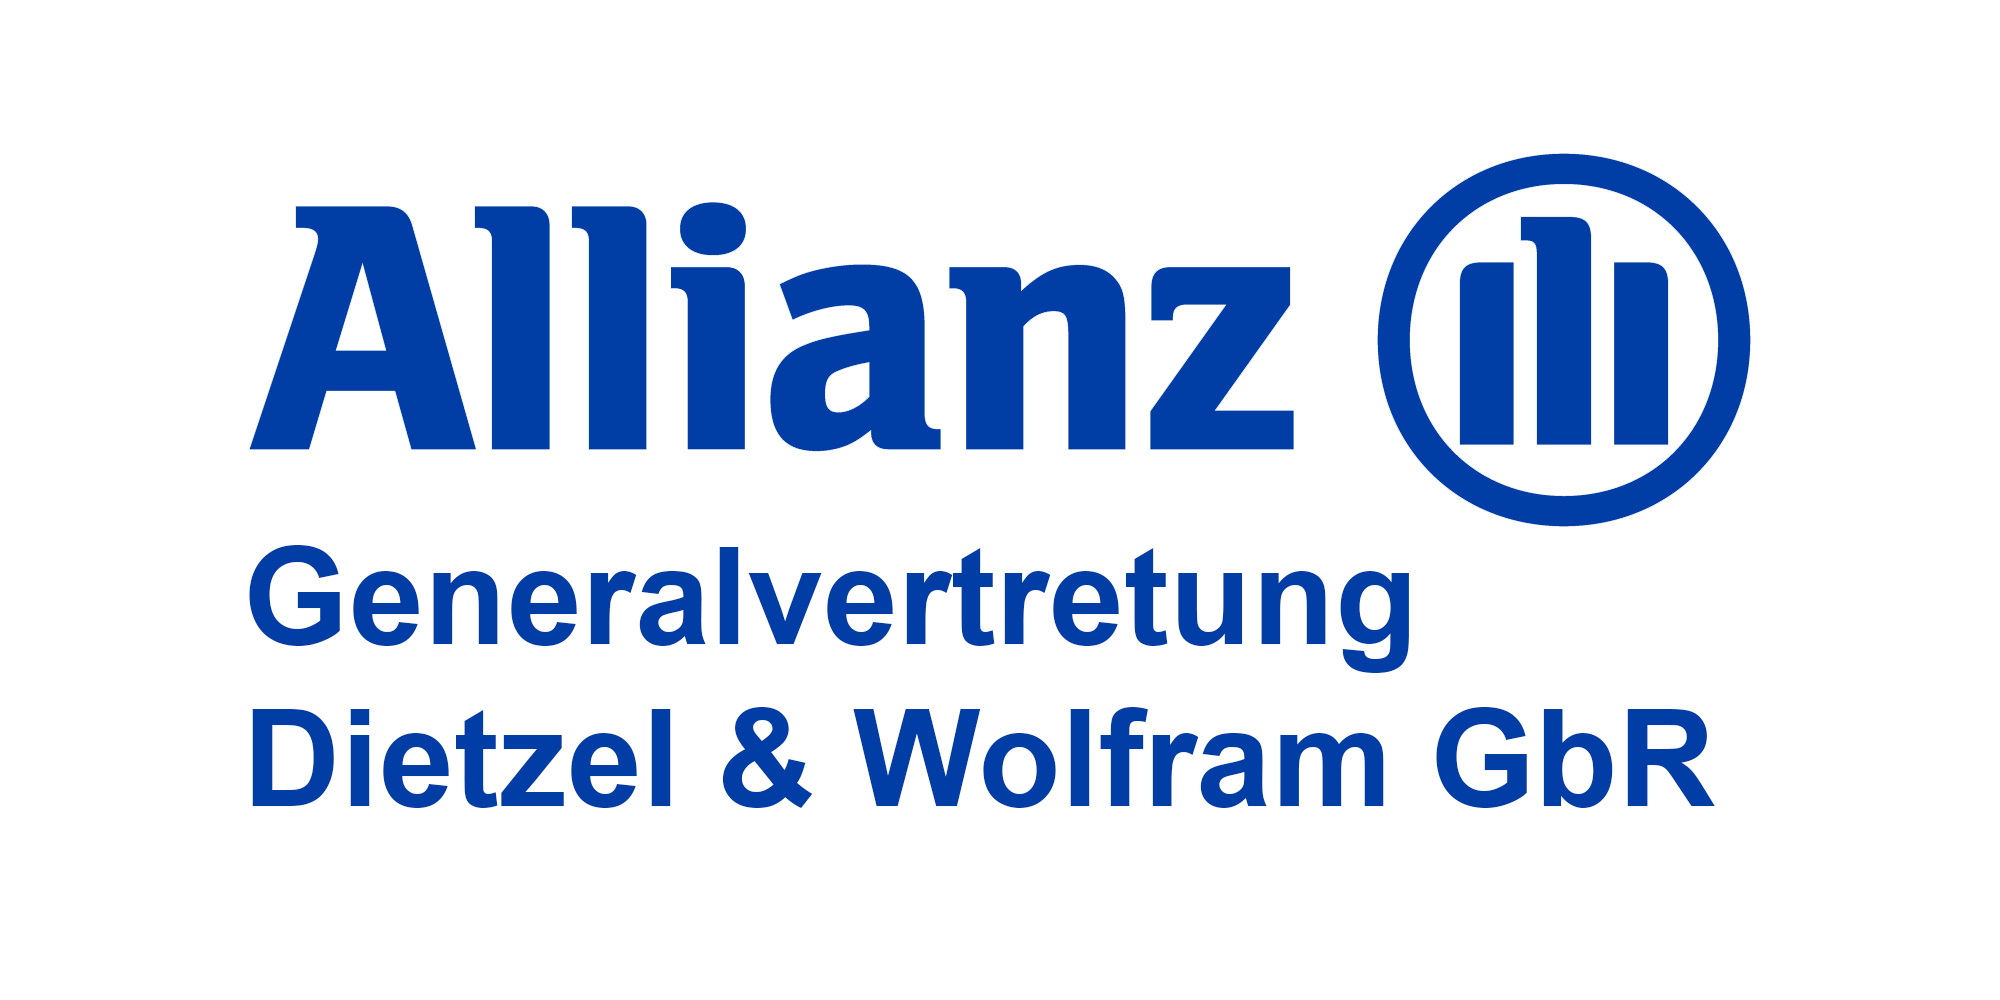 ALLIANZ Generalvertretung Dietzel & Wolfram GbR